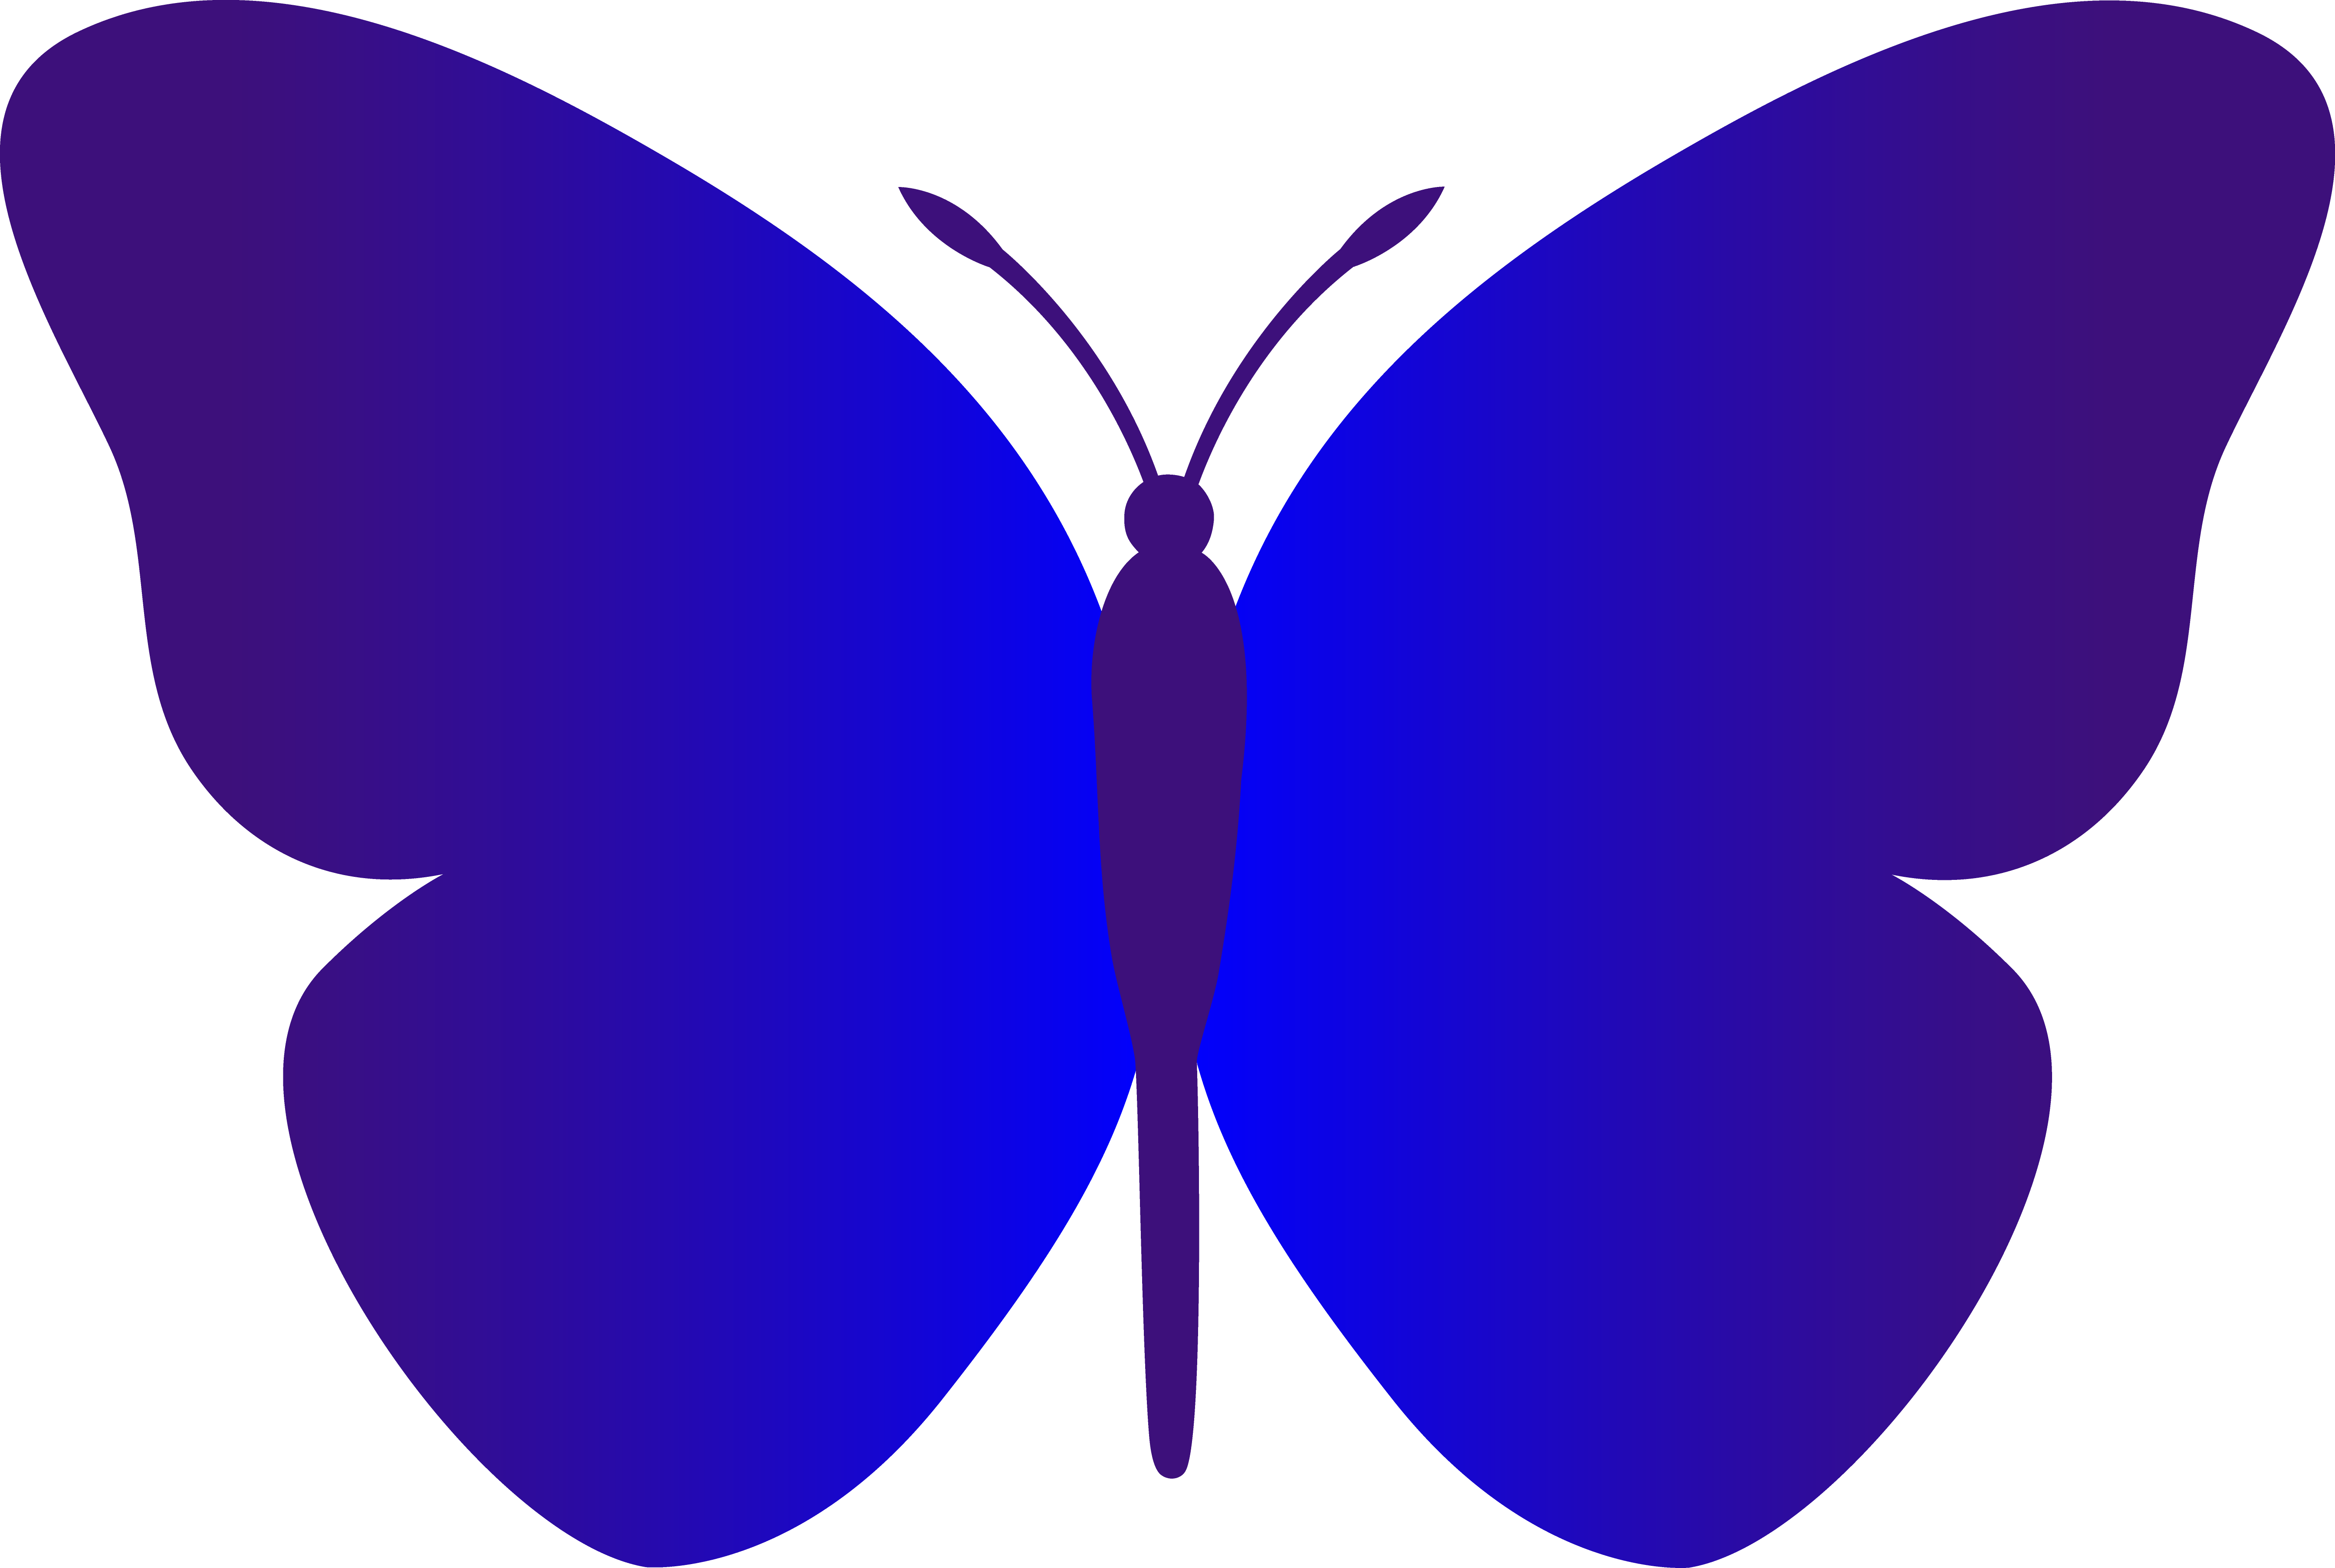 purple cartoon butterfly